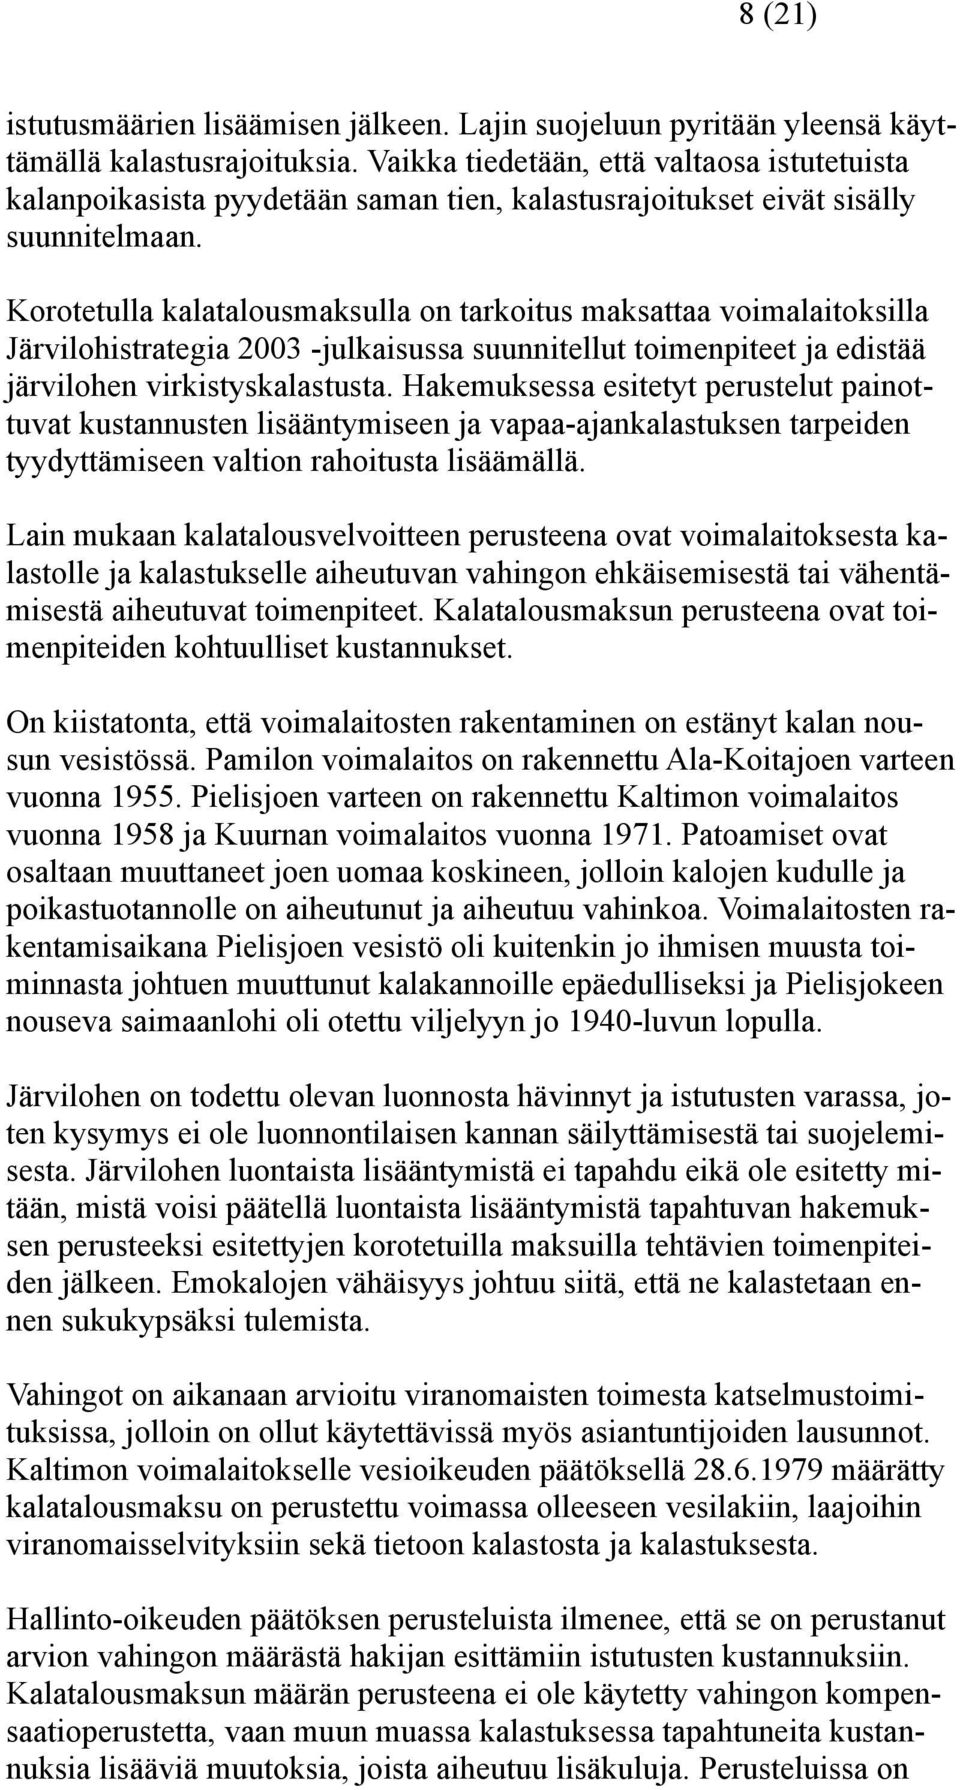 Korotetulla kalatalousmaksulla on tarkoitus maksattaa voimalaitoksilla Järvilohistrategia 2003 -julkaisussa suunnitellut toimenpiteet ja edistää järvilohen virkistyskalastusta.